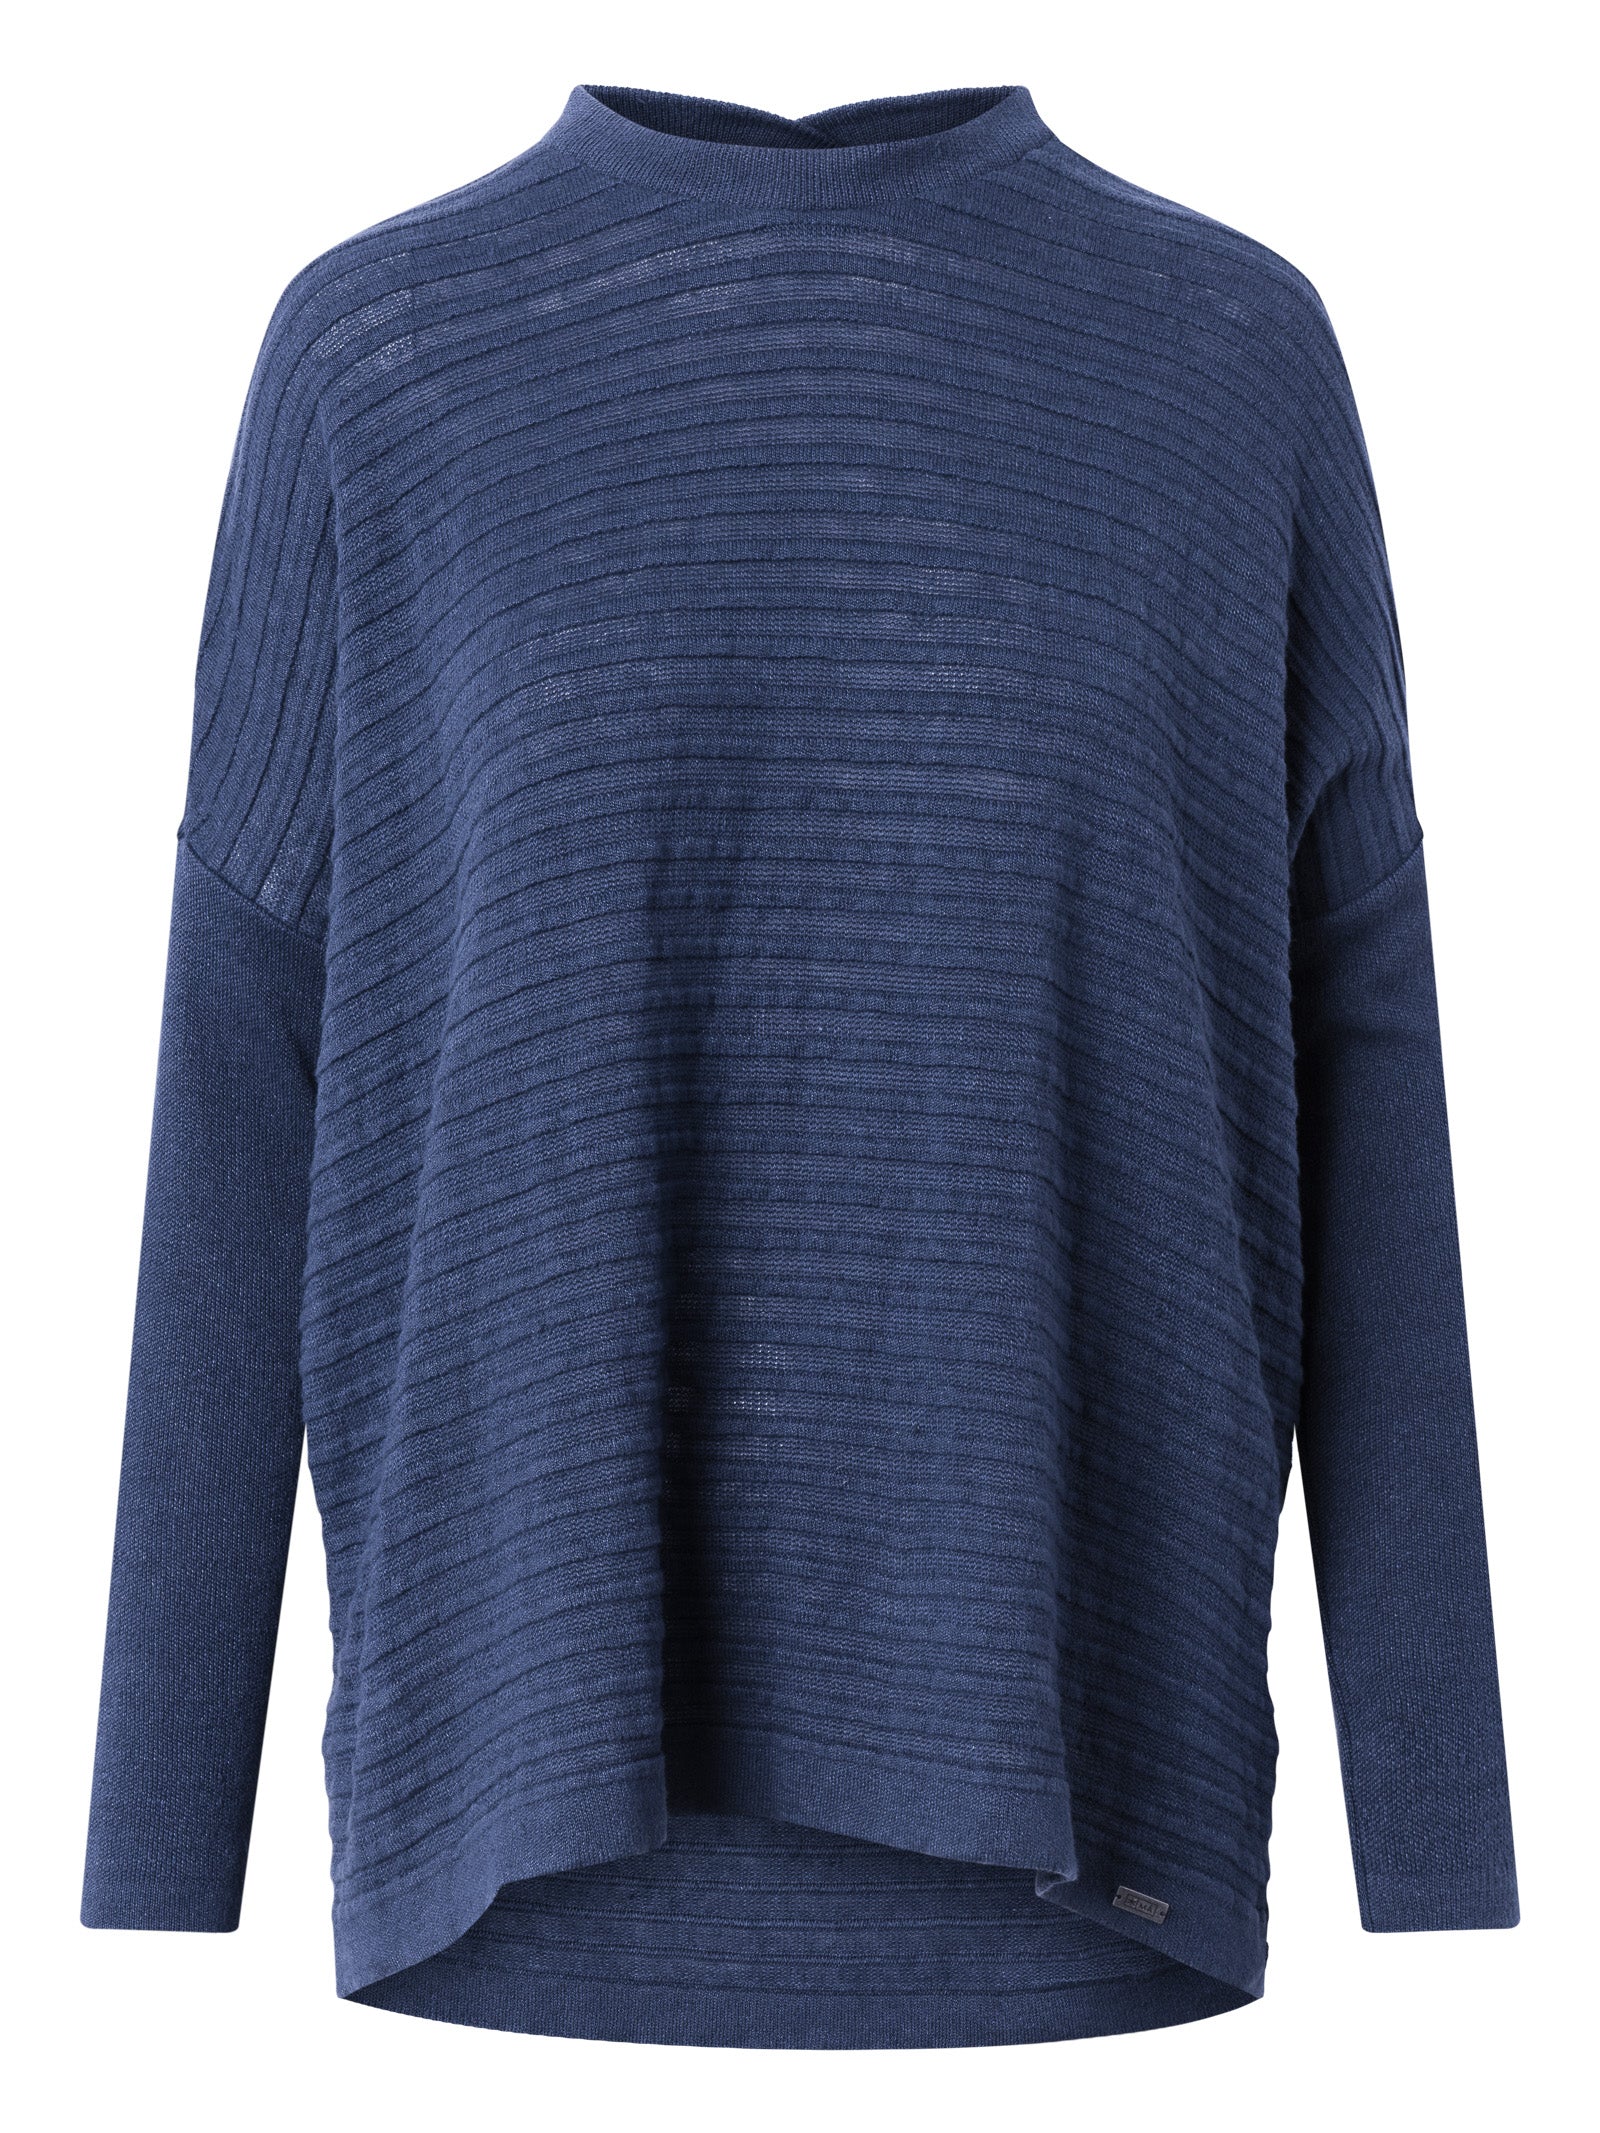 Ma Hempwear - Minna fine Knit Sweater night sky blue